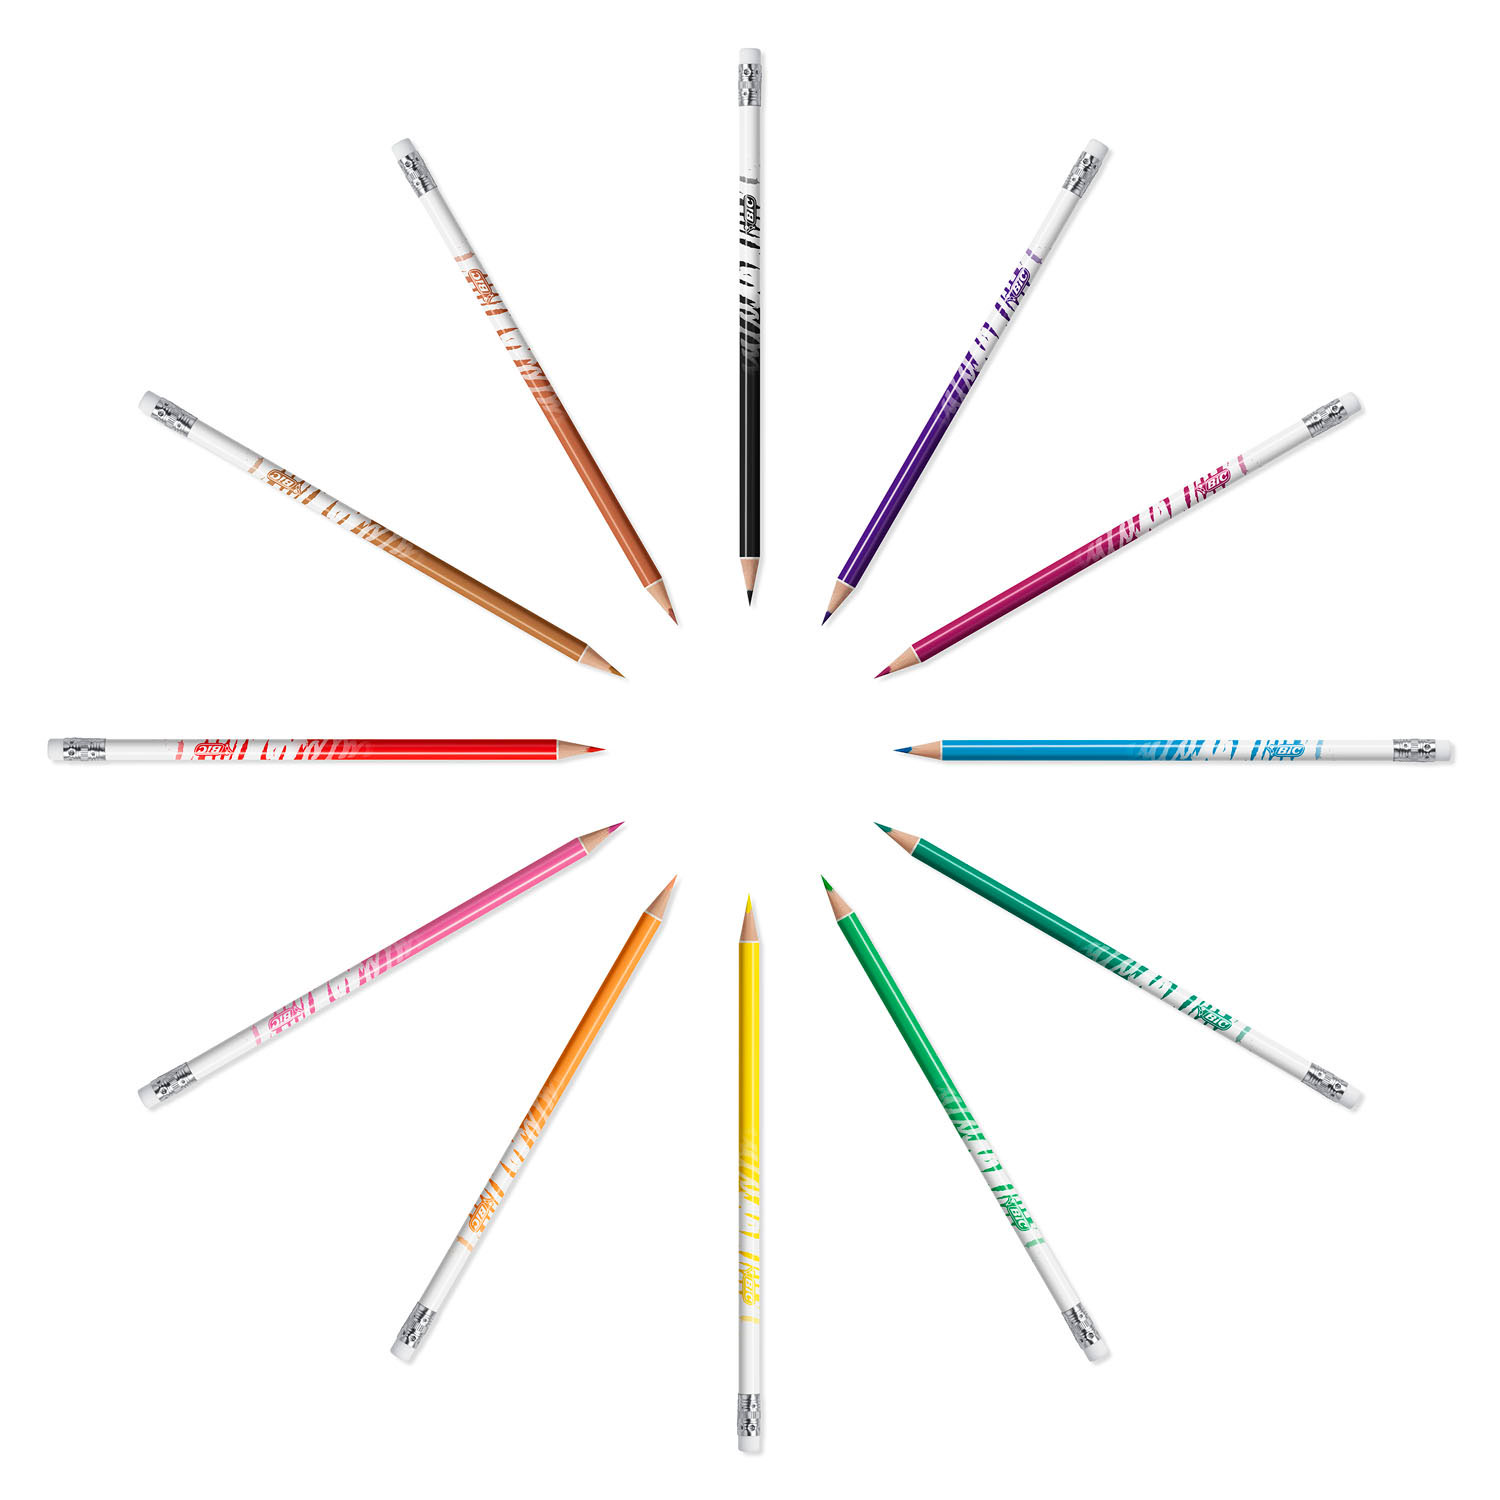 Crayons de couleur effaçables BIC Kids Evolution, 12 pcs.